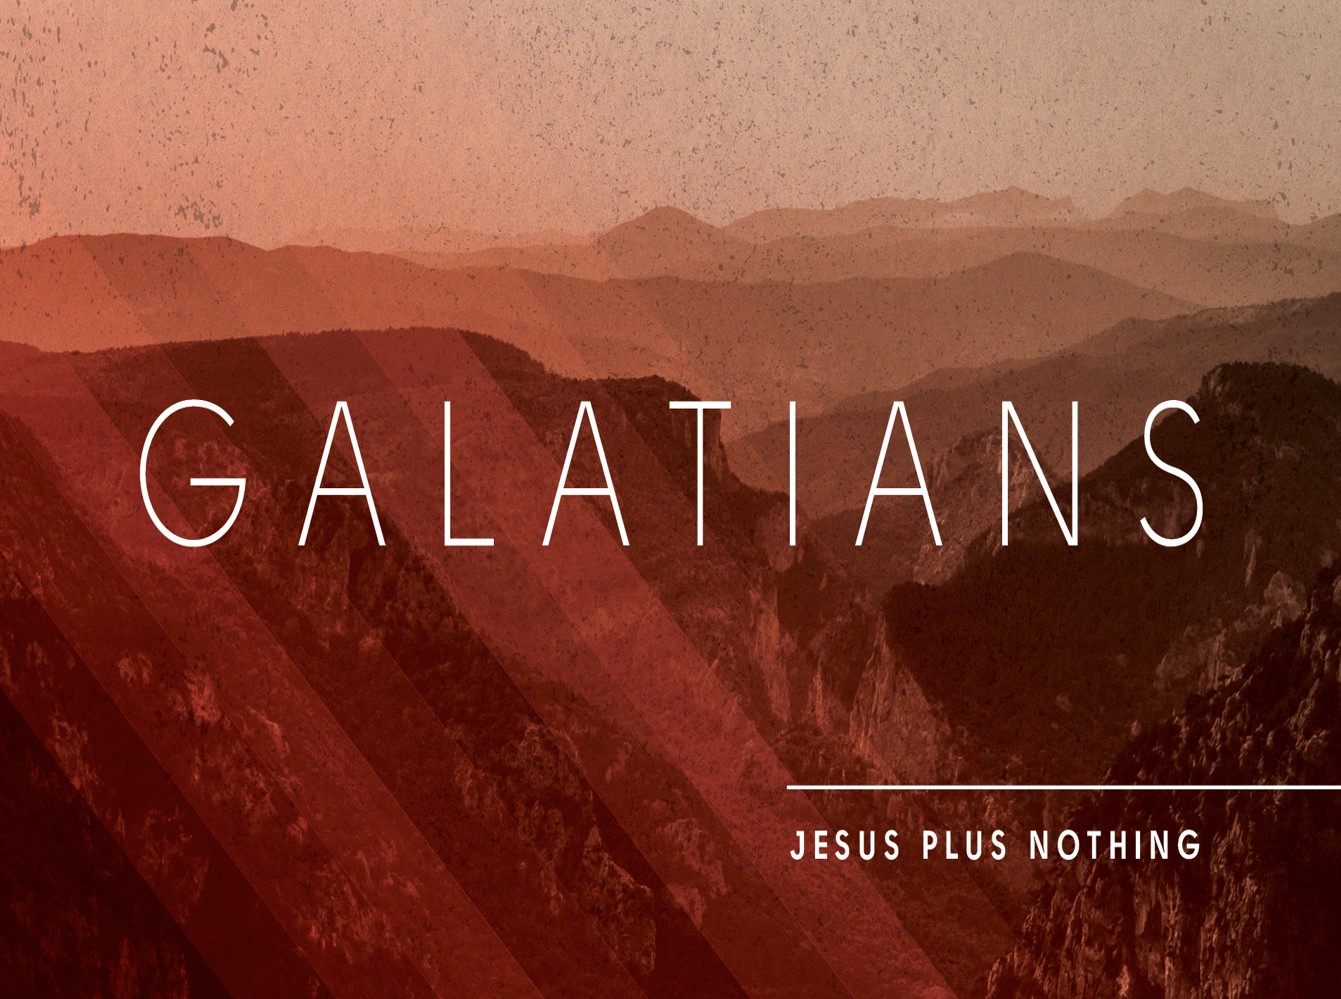 Galatians 3:19-25